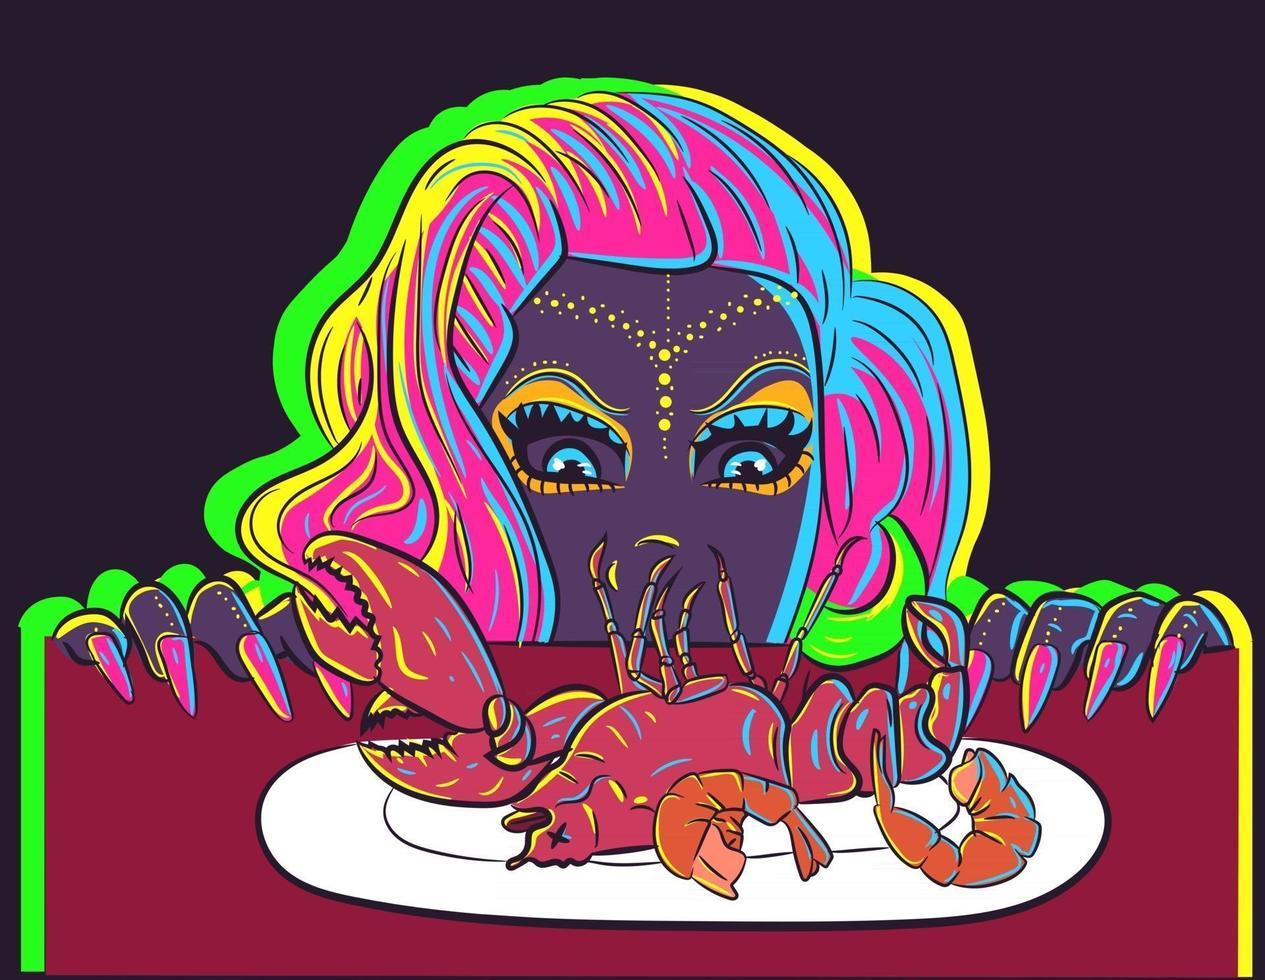 hongerig meisje kijkt uit onder tafel bij een diner met garnalen en kreeft. neon gloeiende vrouw hunkert naar de zeevruchten op het bord. vector van een dame met fantastisch roze haar